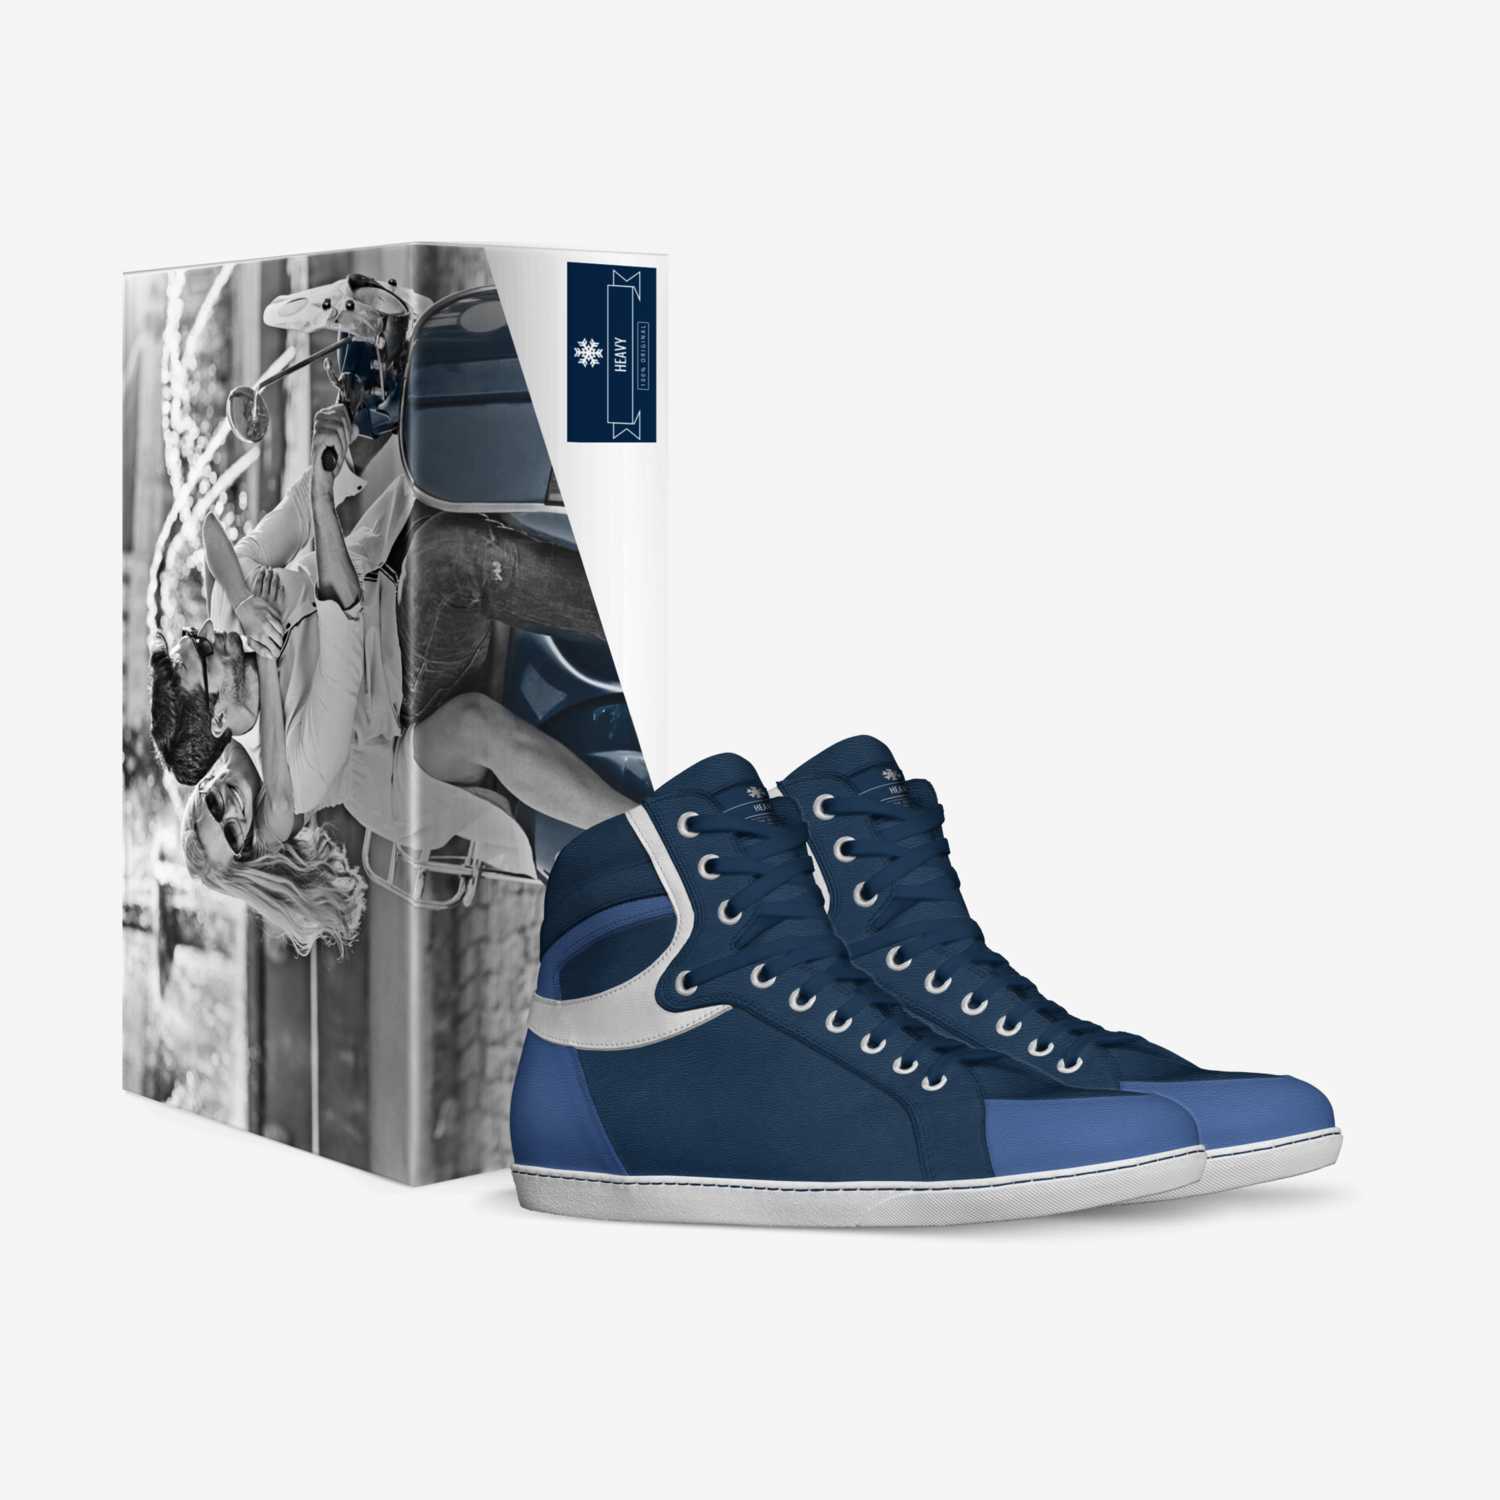 HEAVY custom made in Italy shoes by Moffatt Gordon | Box view